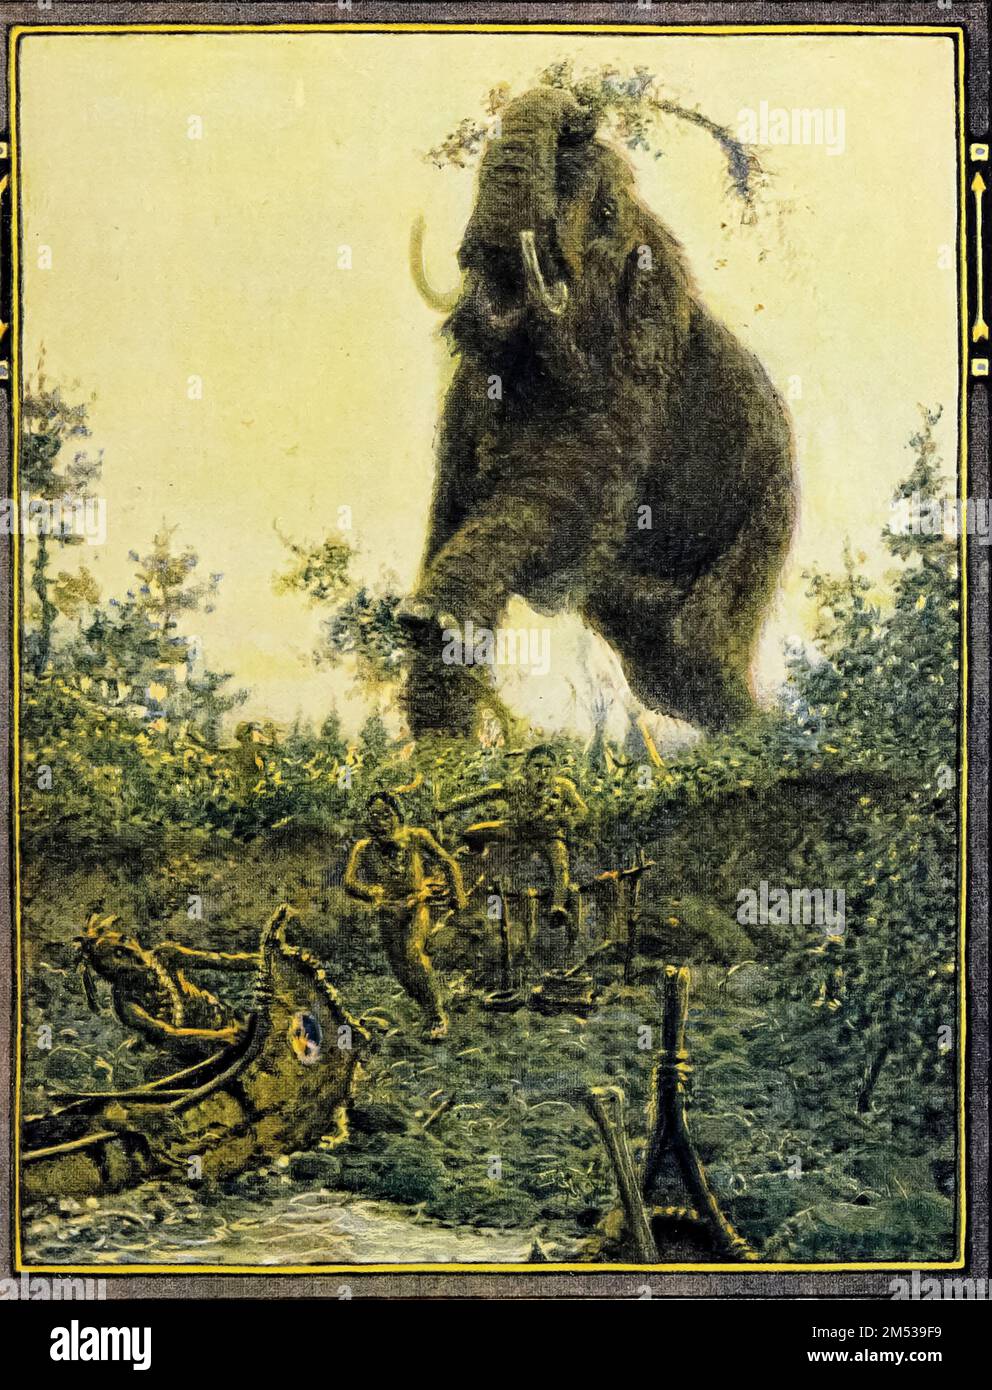 Der größte von allen war Bosh-kwa-dosh, der Mastodon. Illustriert von John Rae aus dem Buch " American Indian Märchen " von William Trowbridge Larned, Publikationsdatum 1921 Publisher New York, P. F. Volland Stockfoto